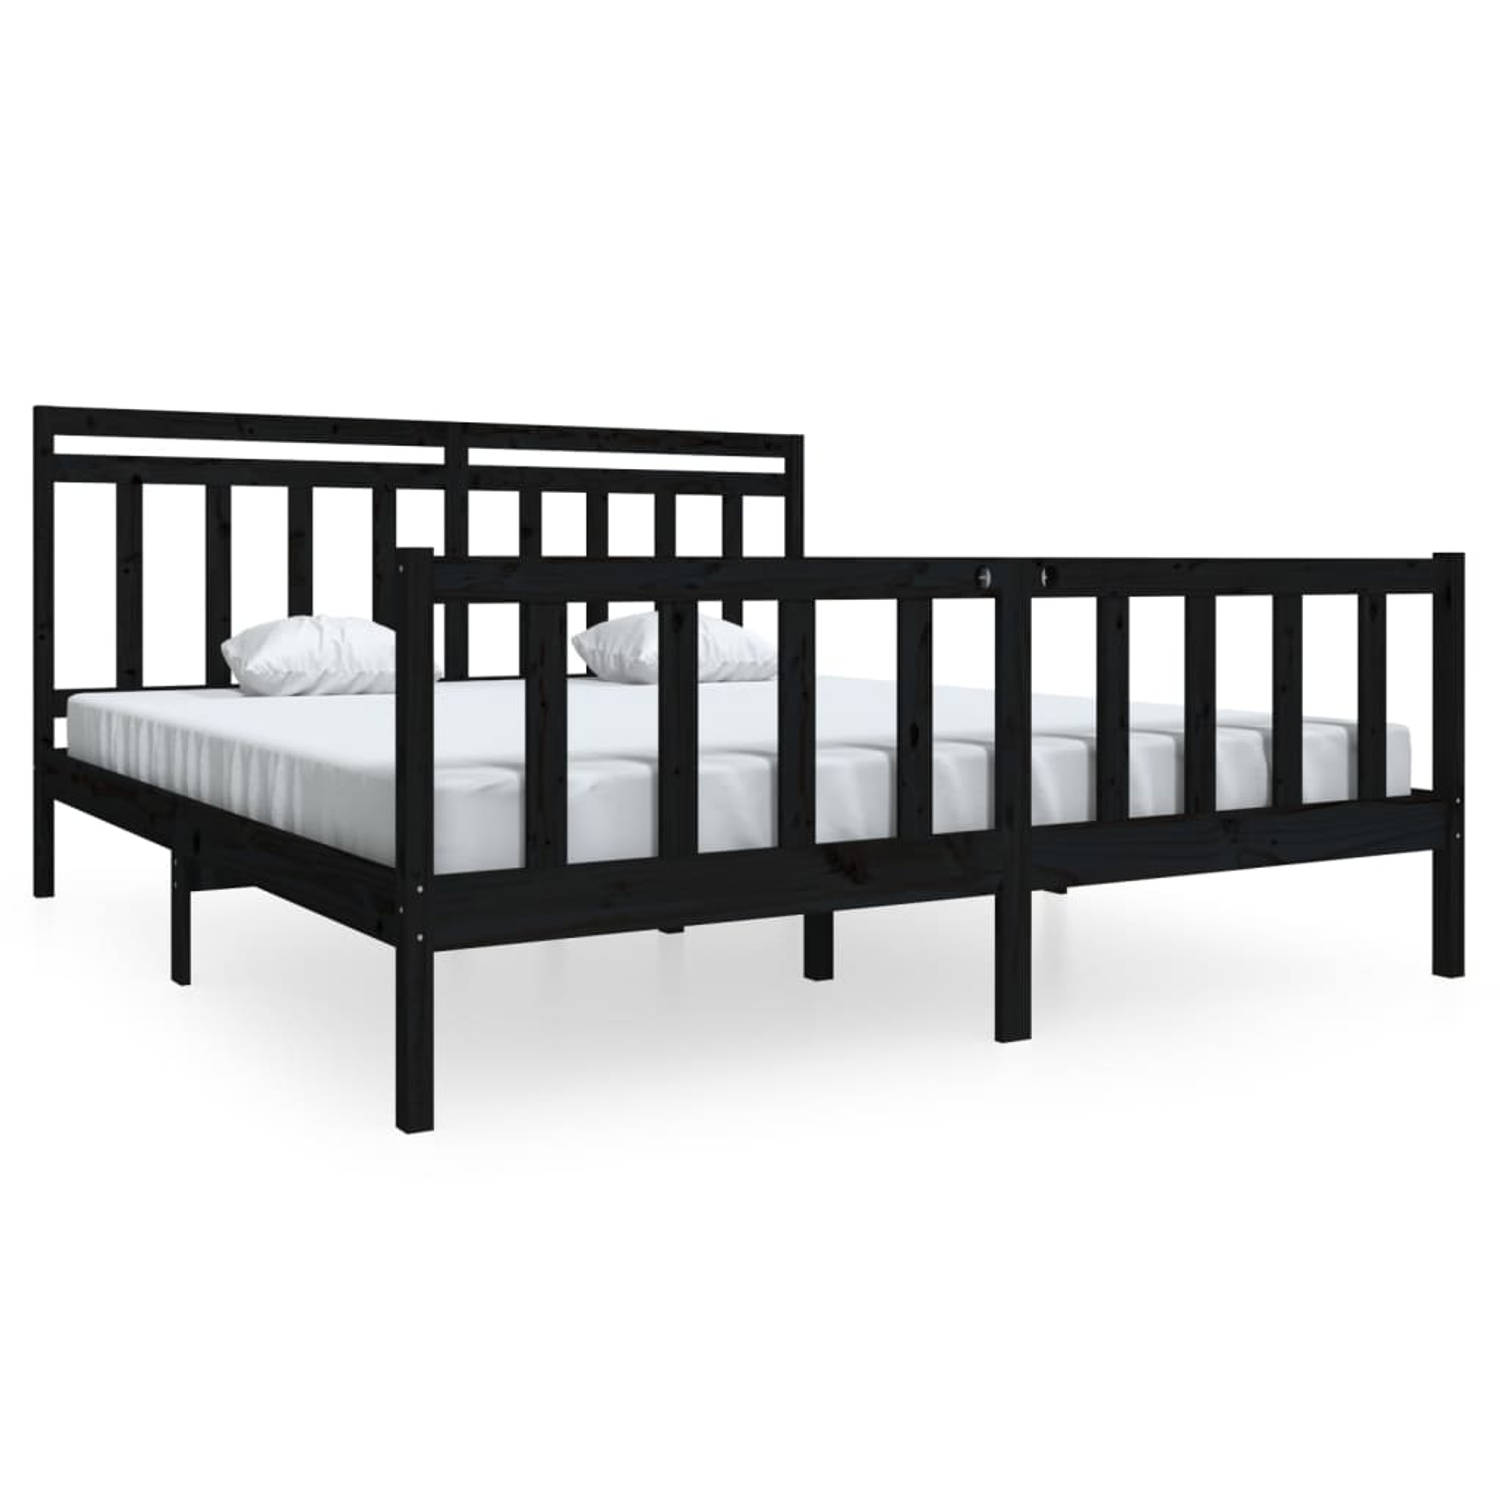 The Living Store Bedframe massief hout zwart 180x200 cm 6FT Super King - Bedframe - Bedframes - Tweepersoonsbed - Bed - Bedombouw - Dubbel Bed - Frame - Bed Frame - Ledikant - Bedf